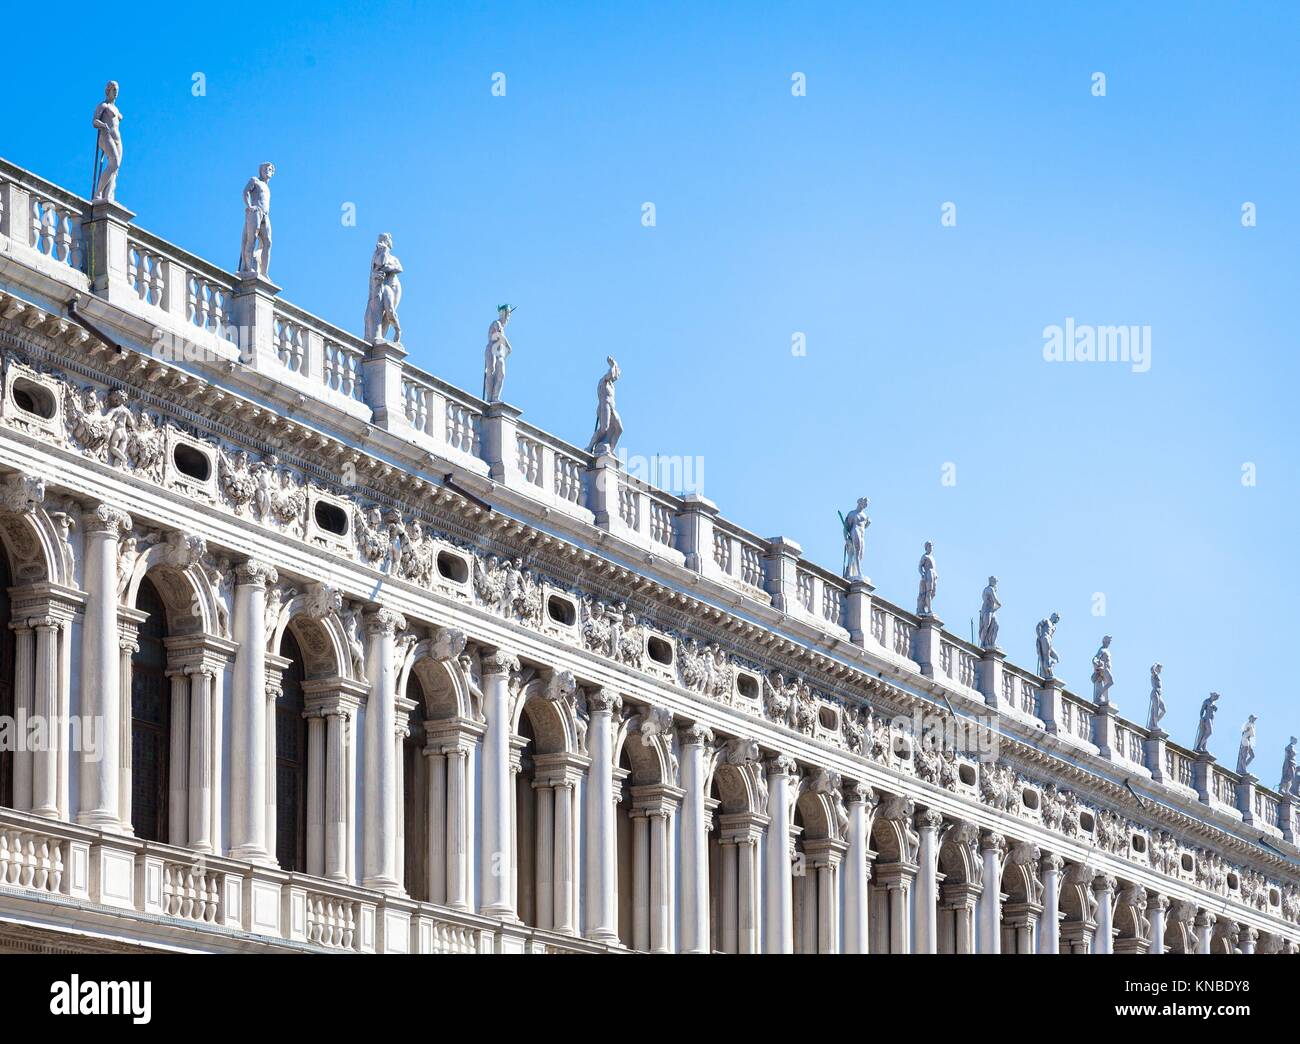 La Piazza San Marco, Venecia, Italia. Detalles en perspectiva sobre las fachadas del palacio antiguo. Foto de stock